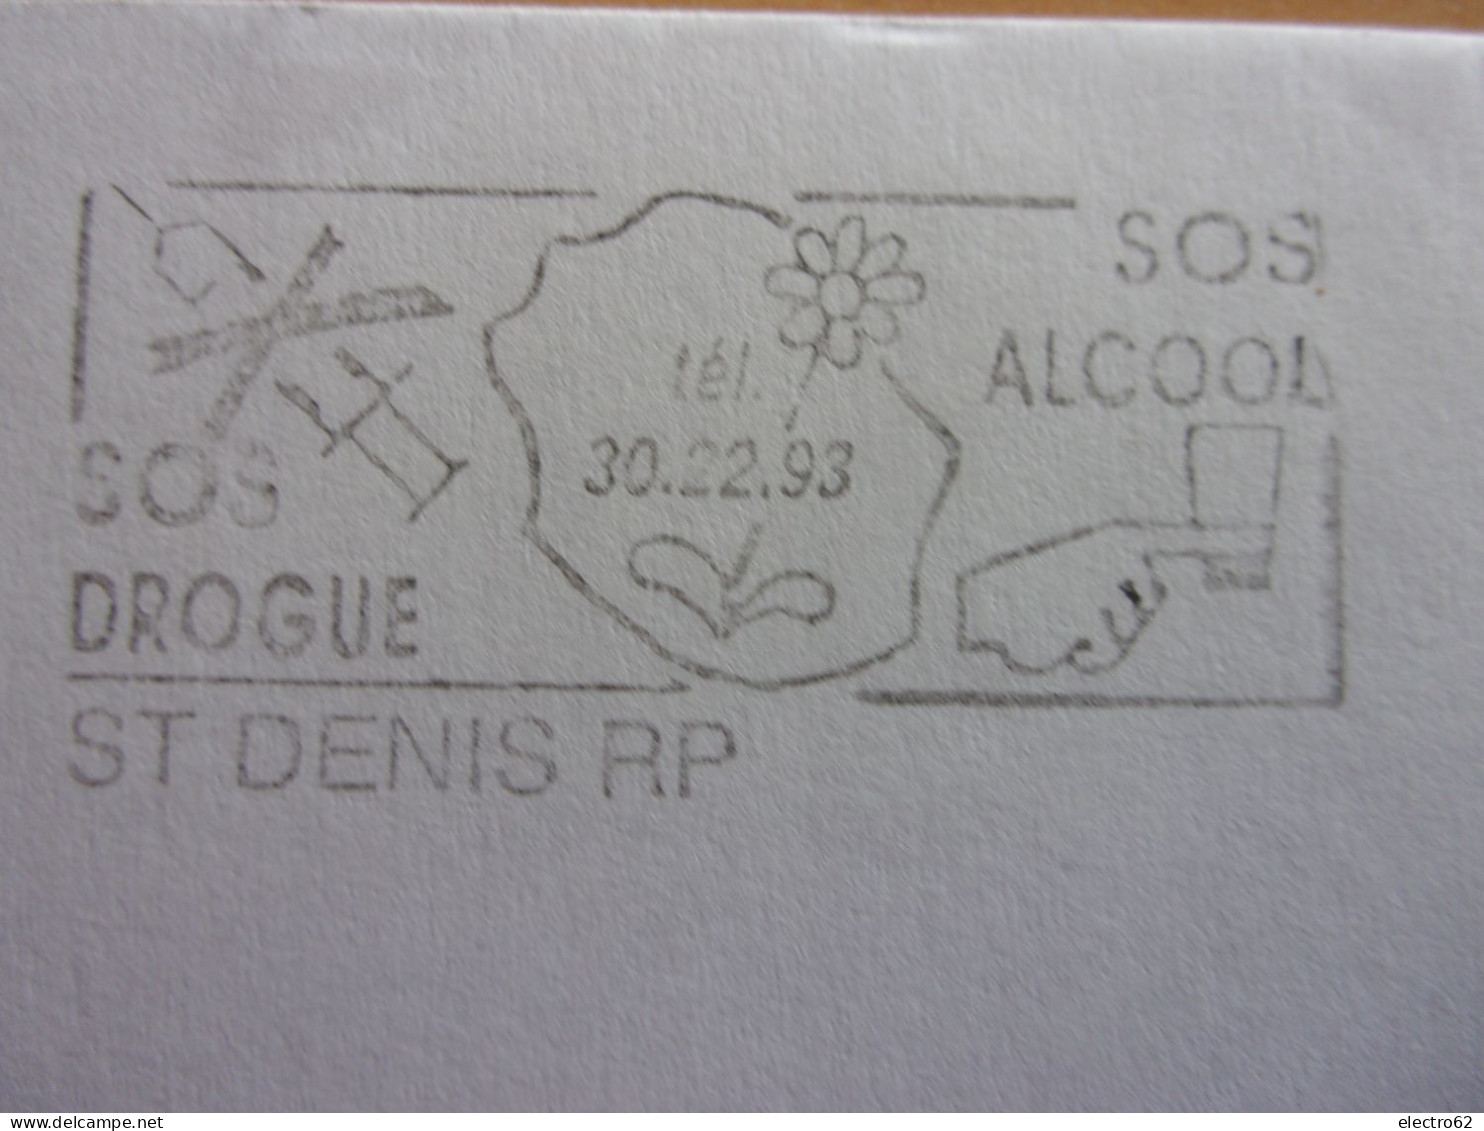 St Denis RP Réunion SOS Drogue Alcool Marianne Du Bicentenaire Seringue Fleur - Drugs